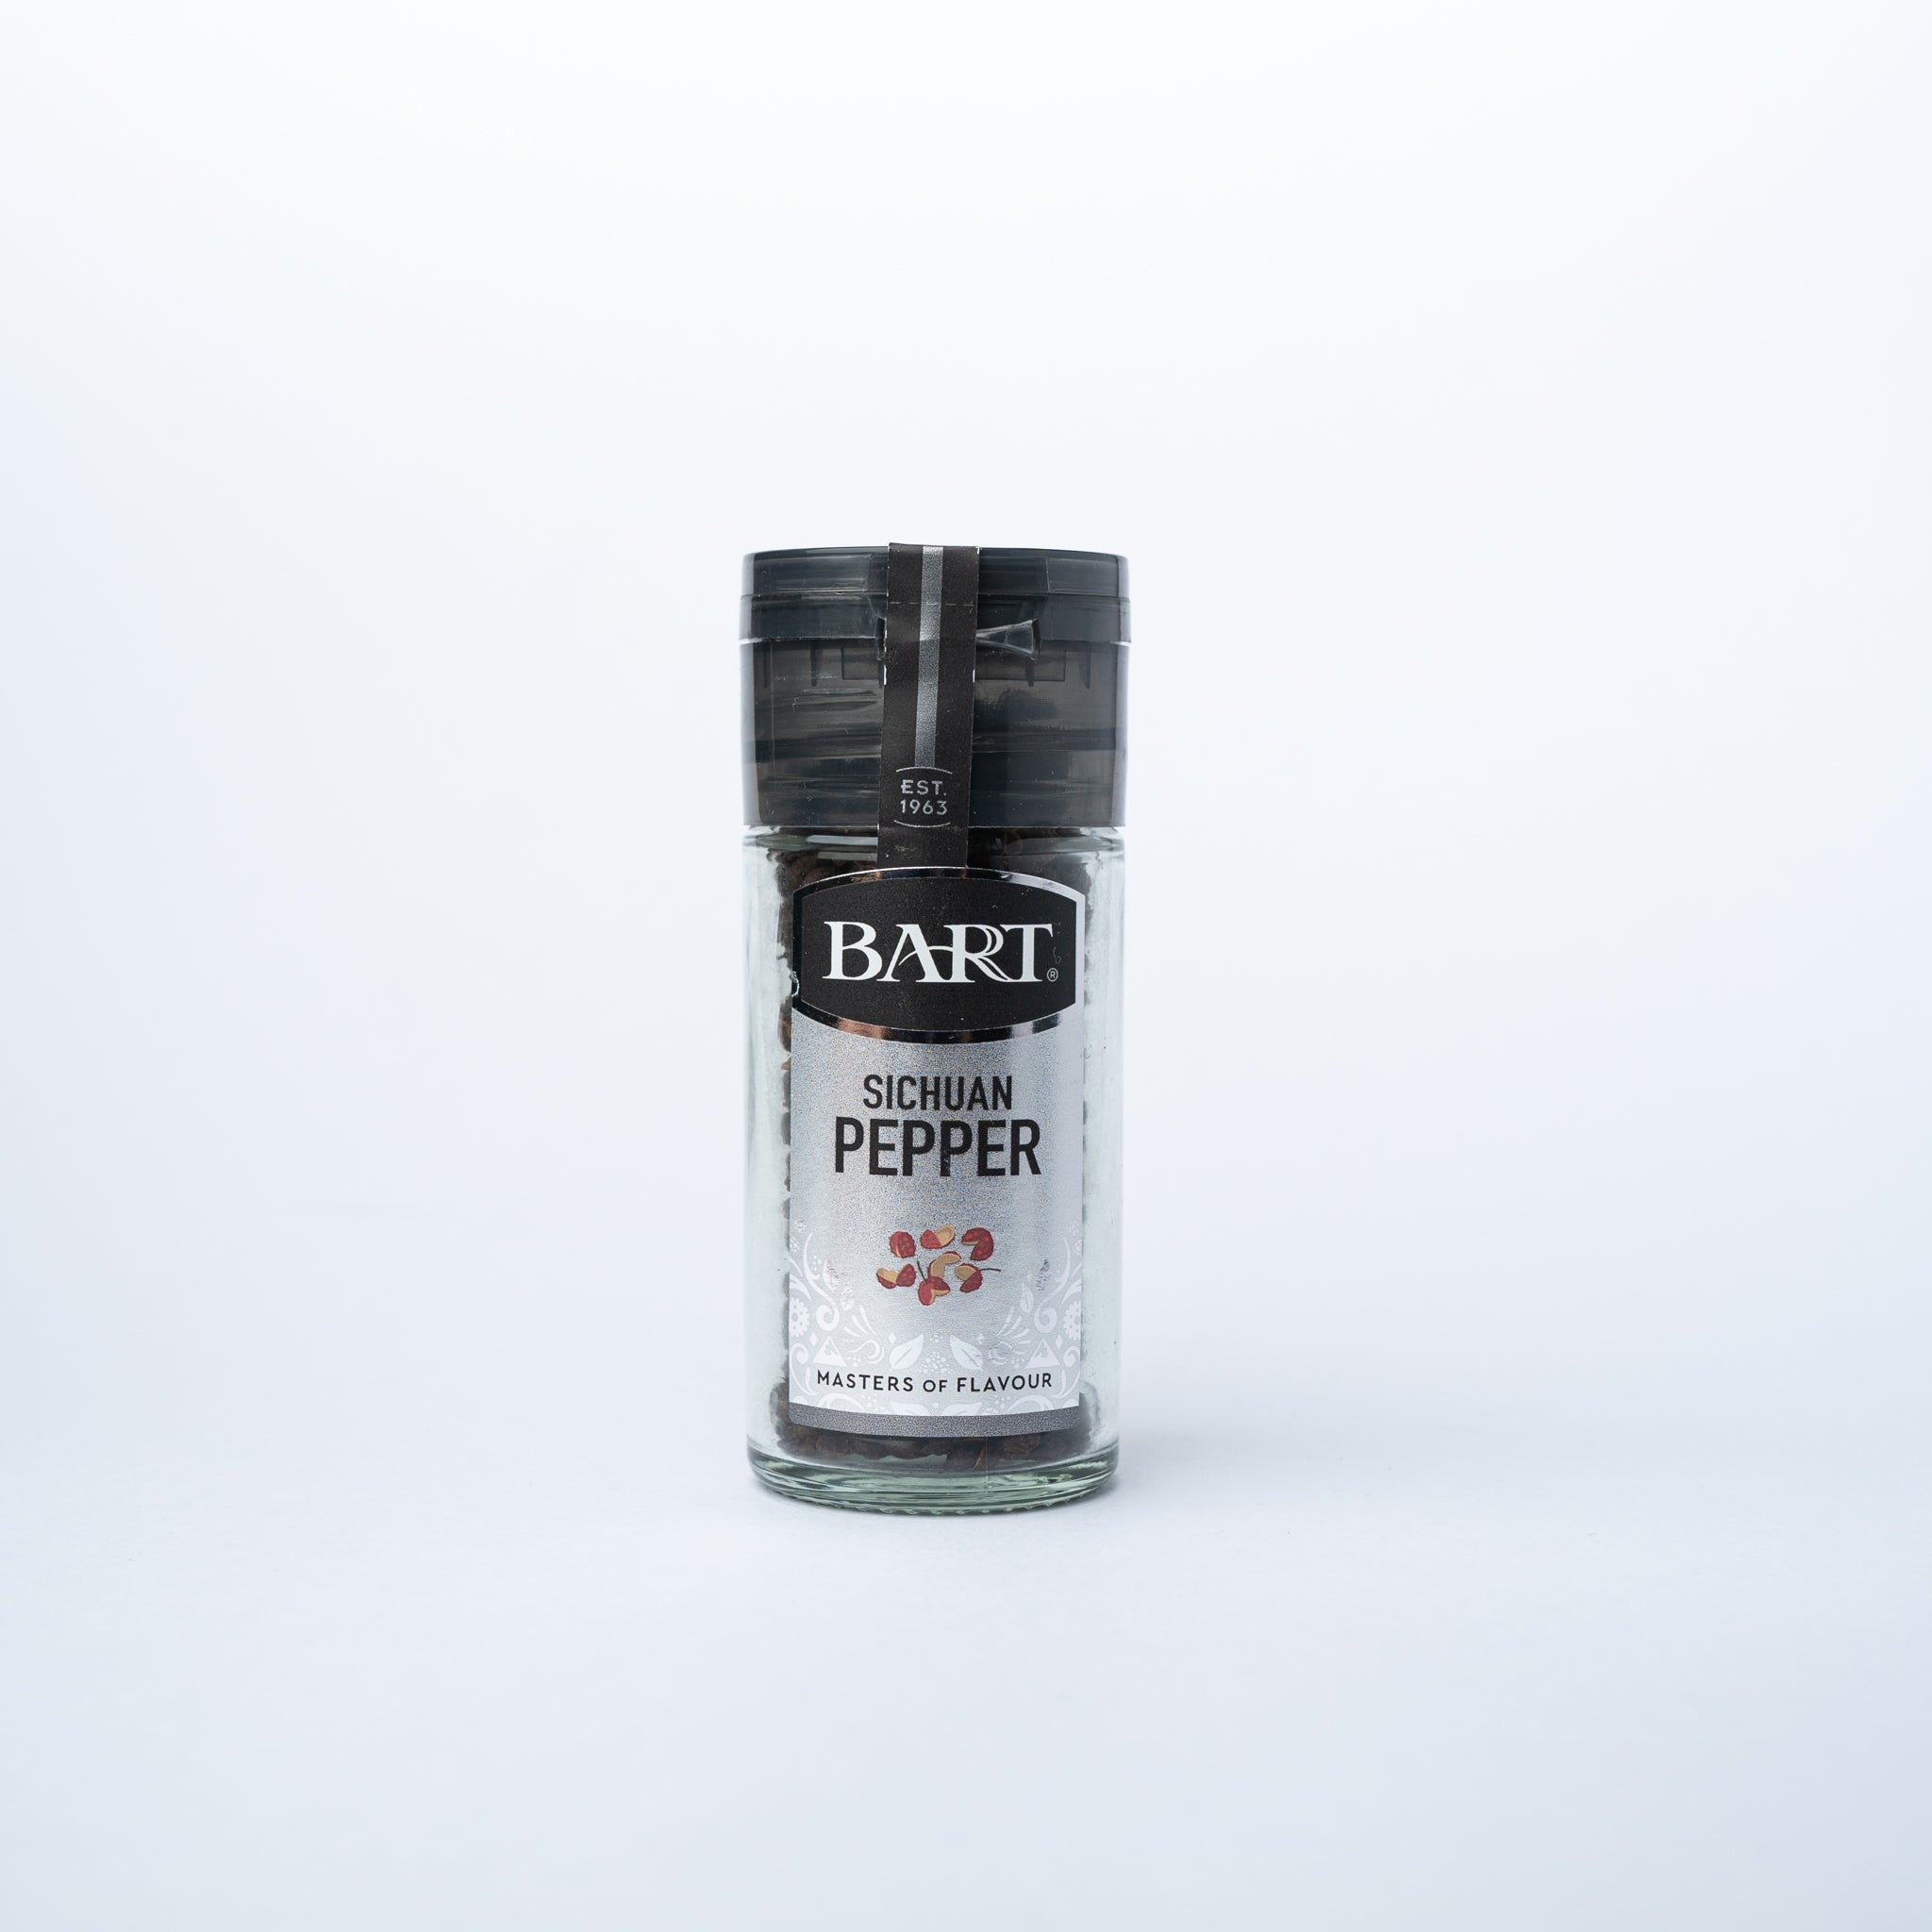 A glass jar of Bart Sichuan Pepper 18g.